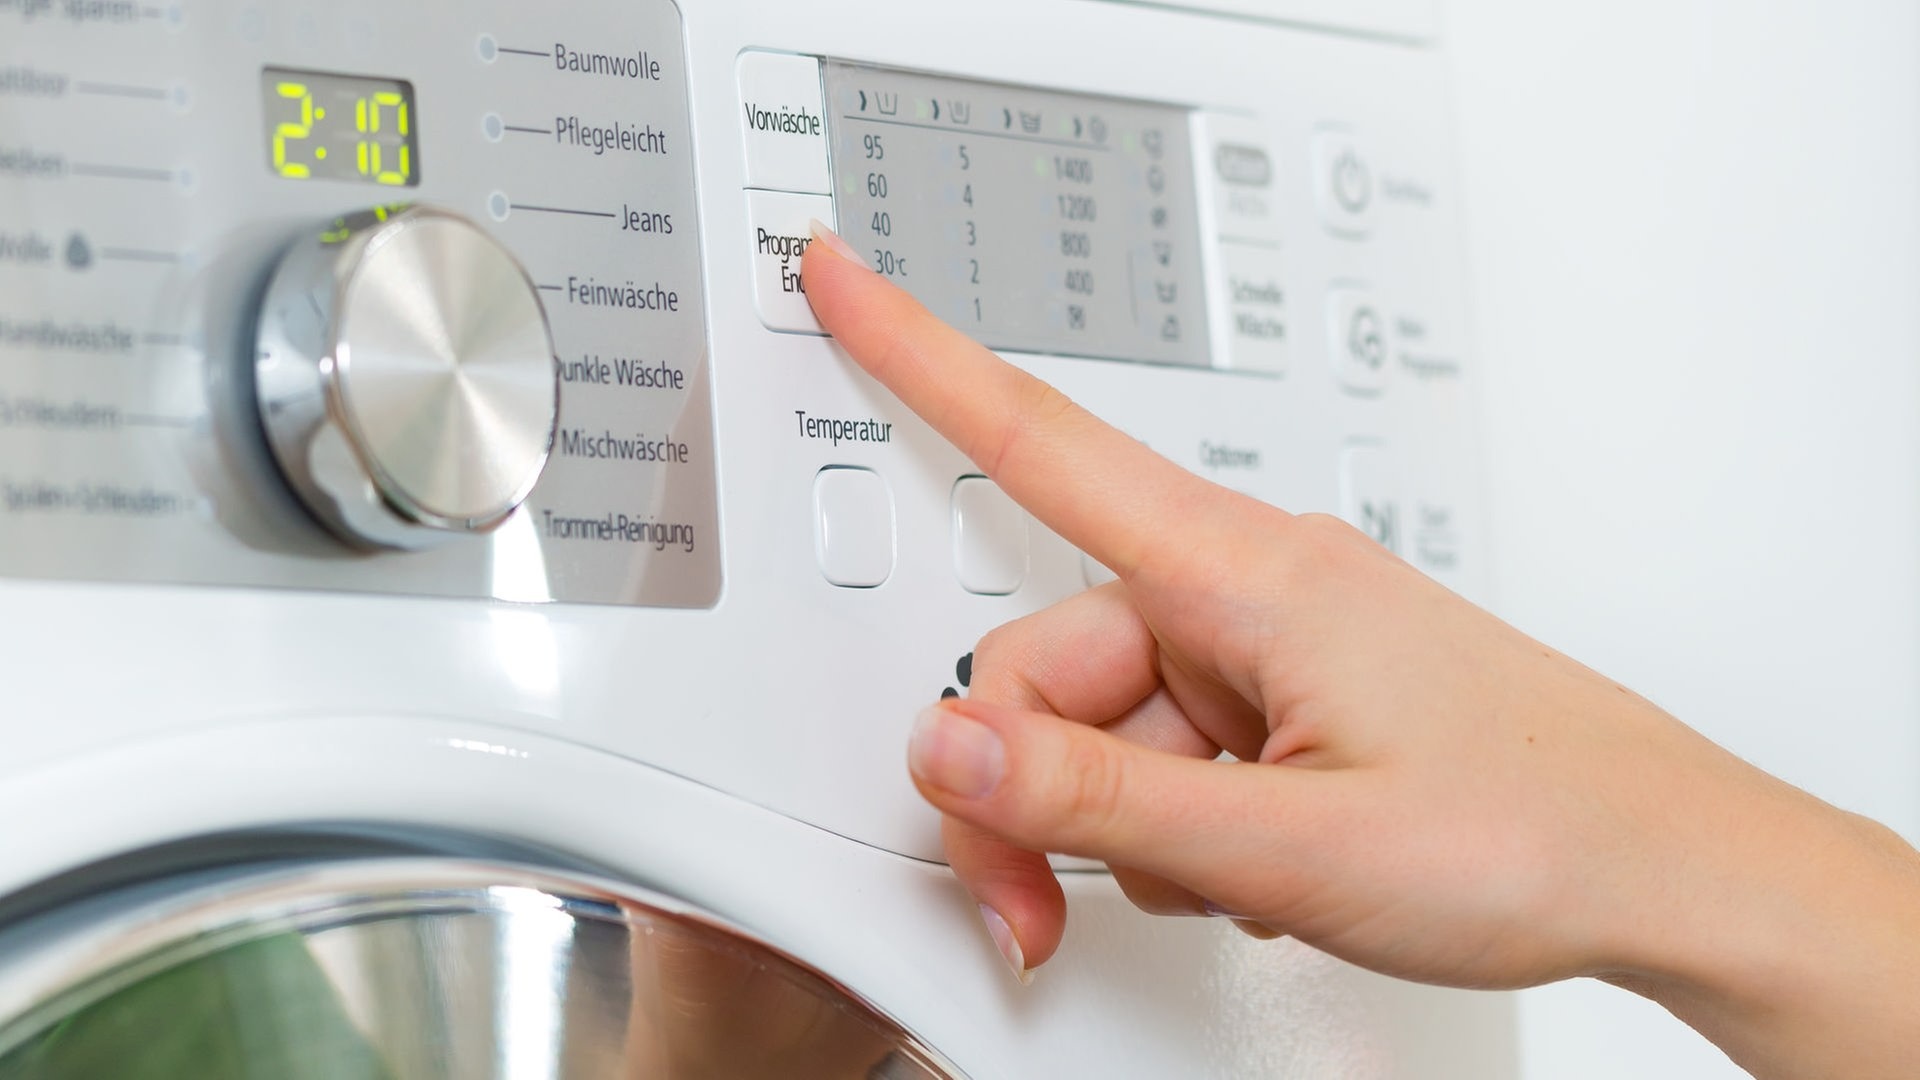 Как стирать шубу в стиральной машине